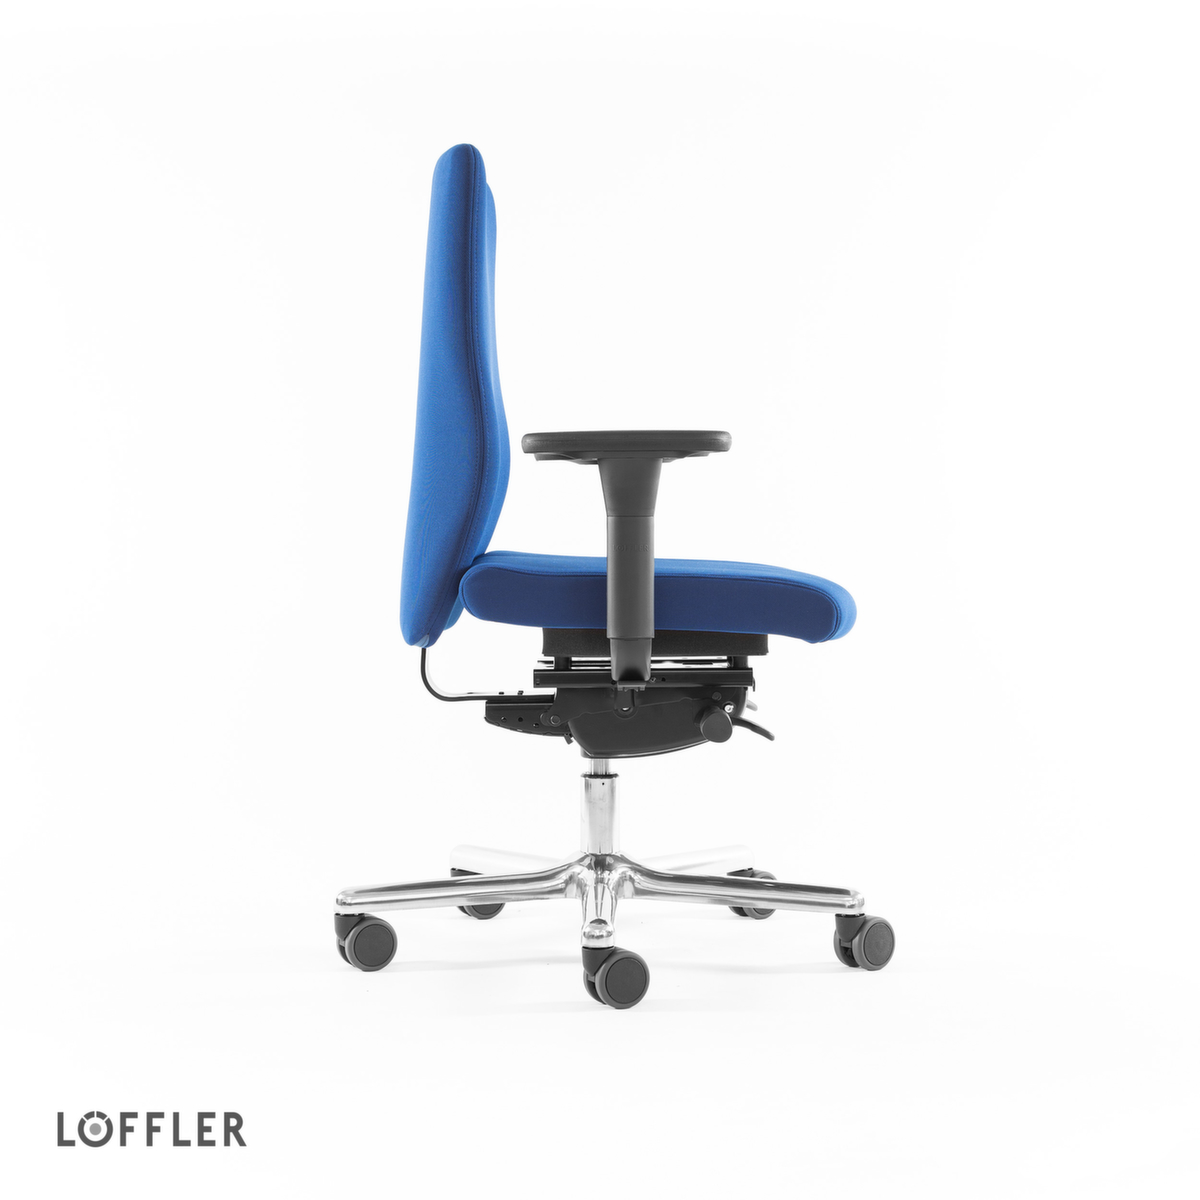 Löffler Bürodrehstuhl mit viskoelastischem Sitz, blau Standard 3 ZOOM